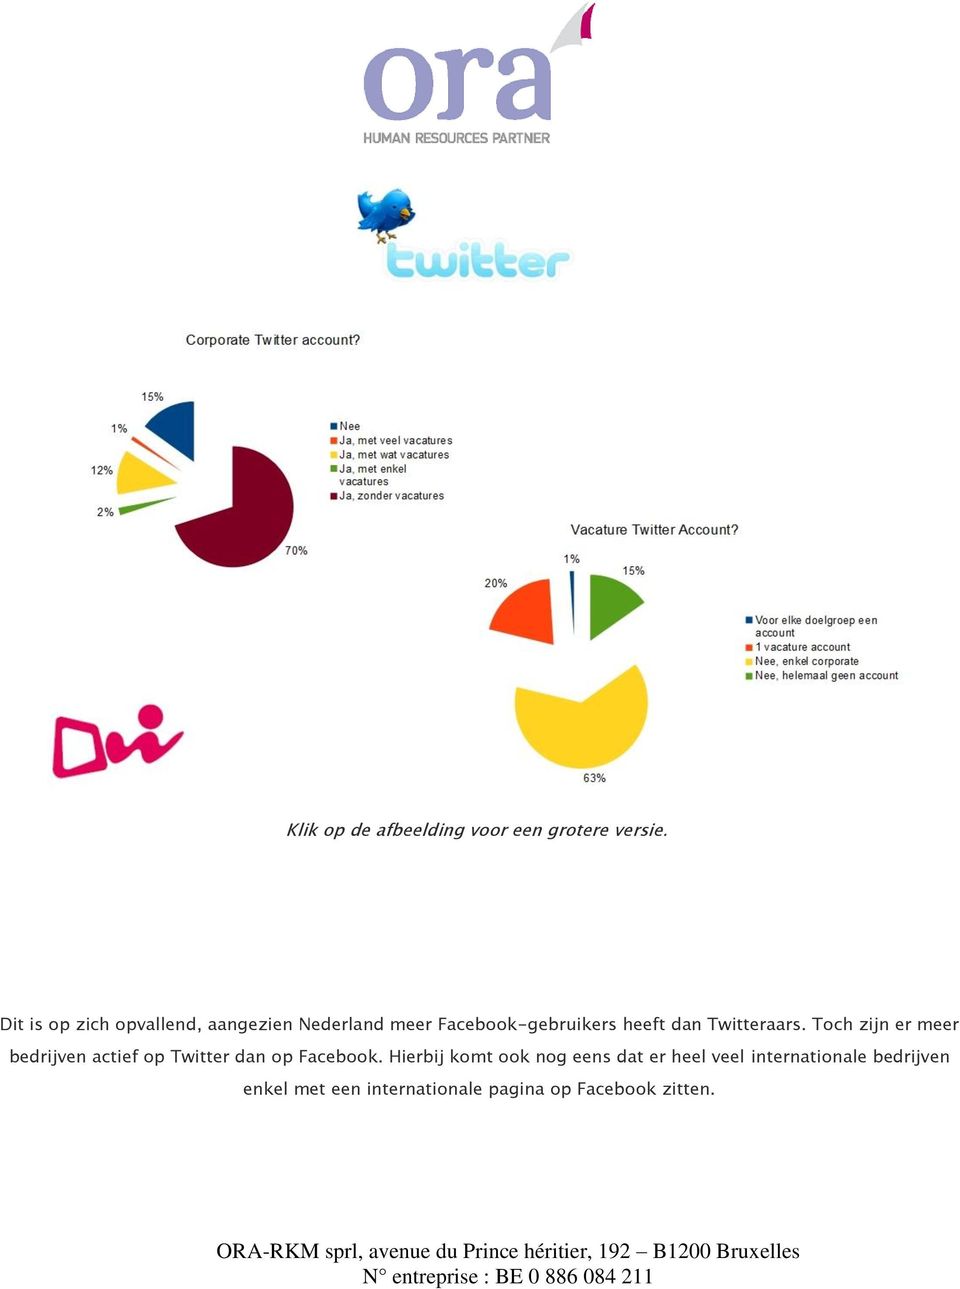 Twitteraars. Toch zijn er meer bedrijven actief op Twitter dan op Facebook.